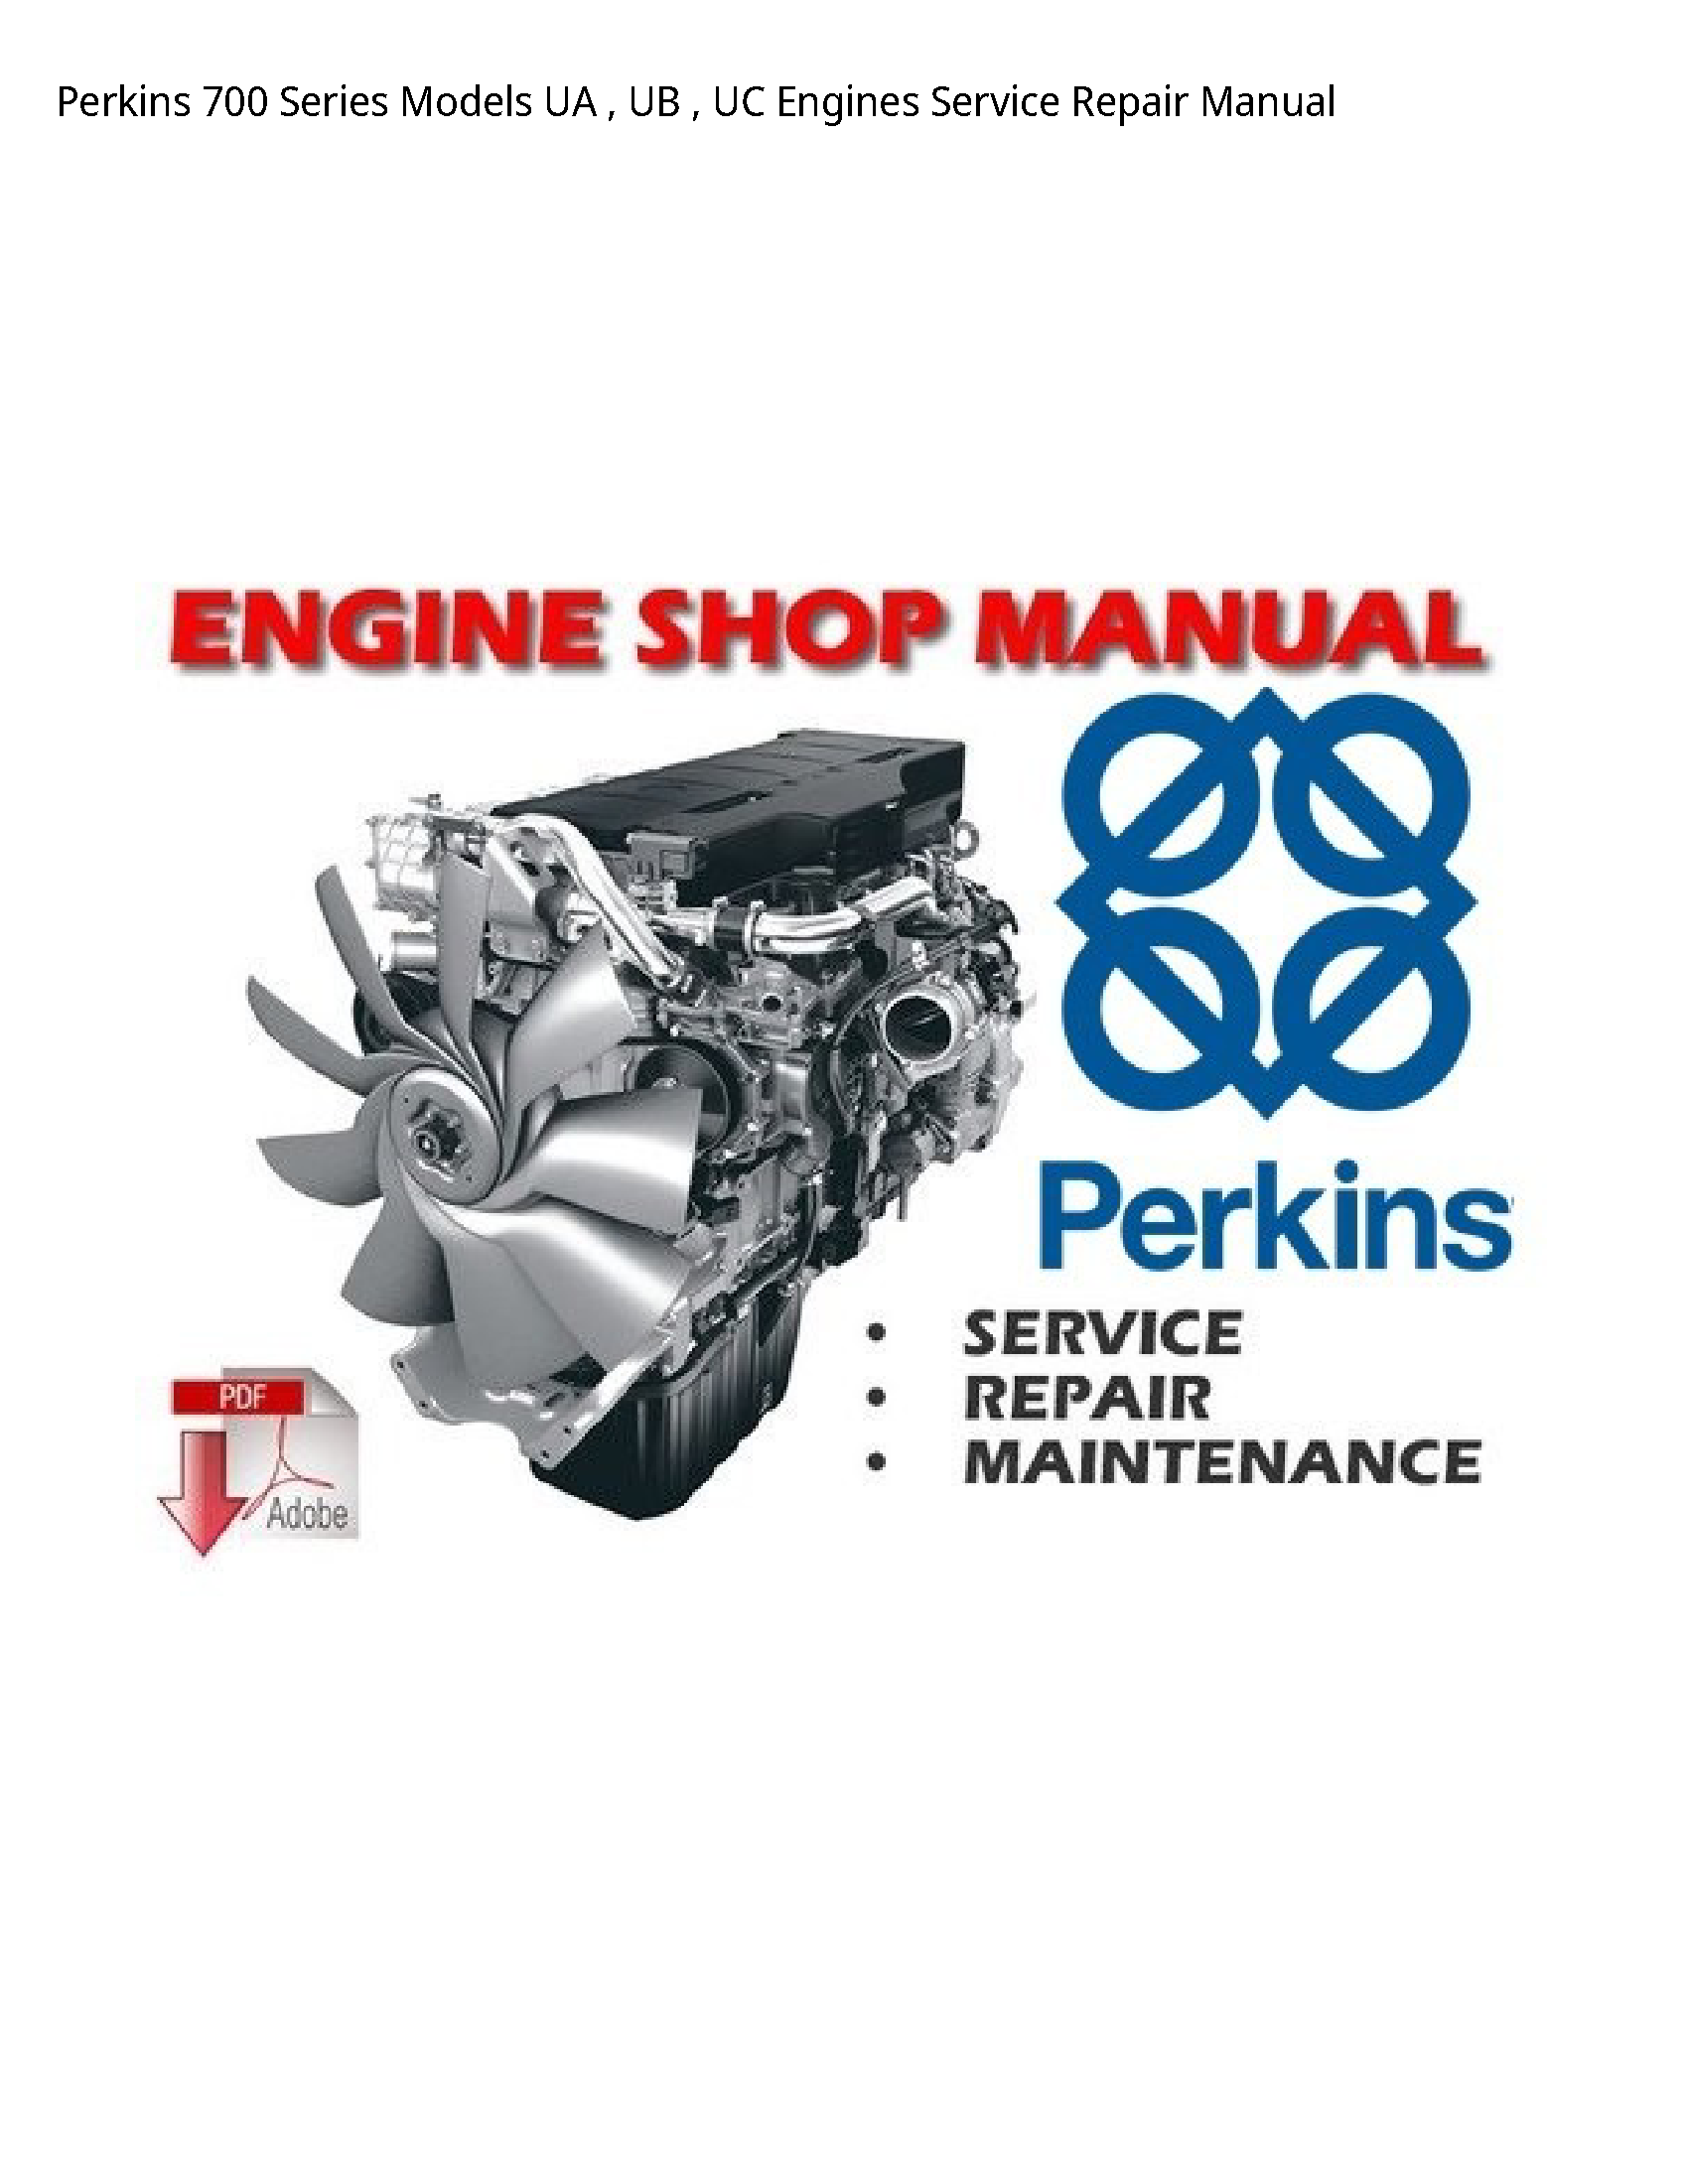 Perkins 700 Series UA UB UC Engines manual